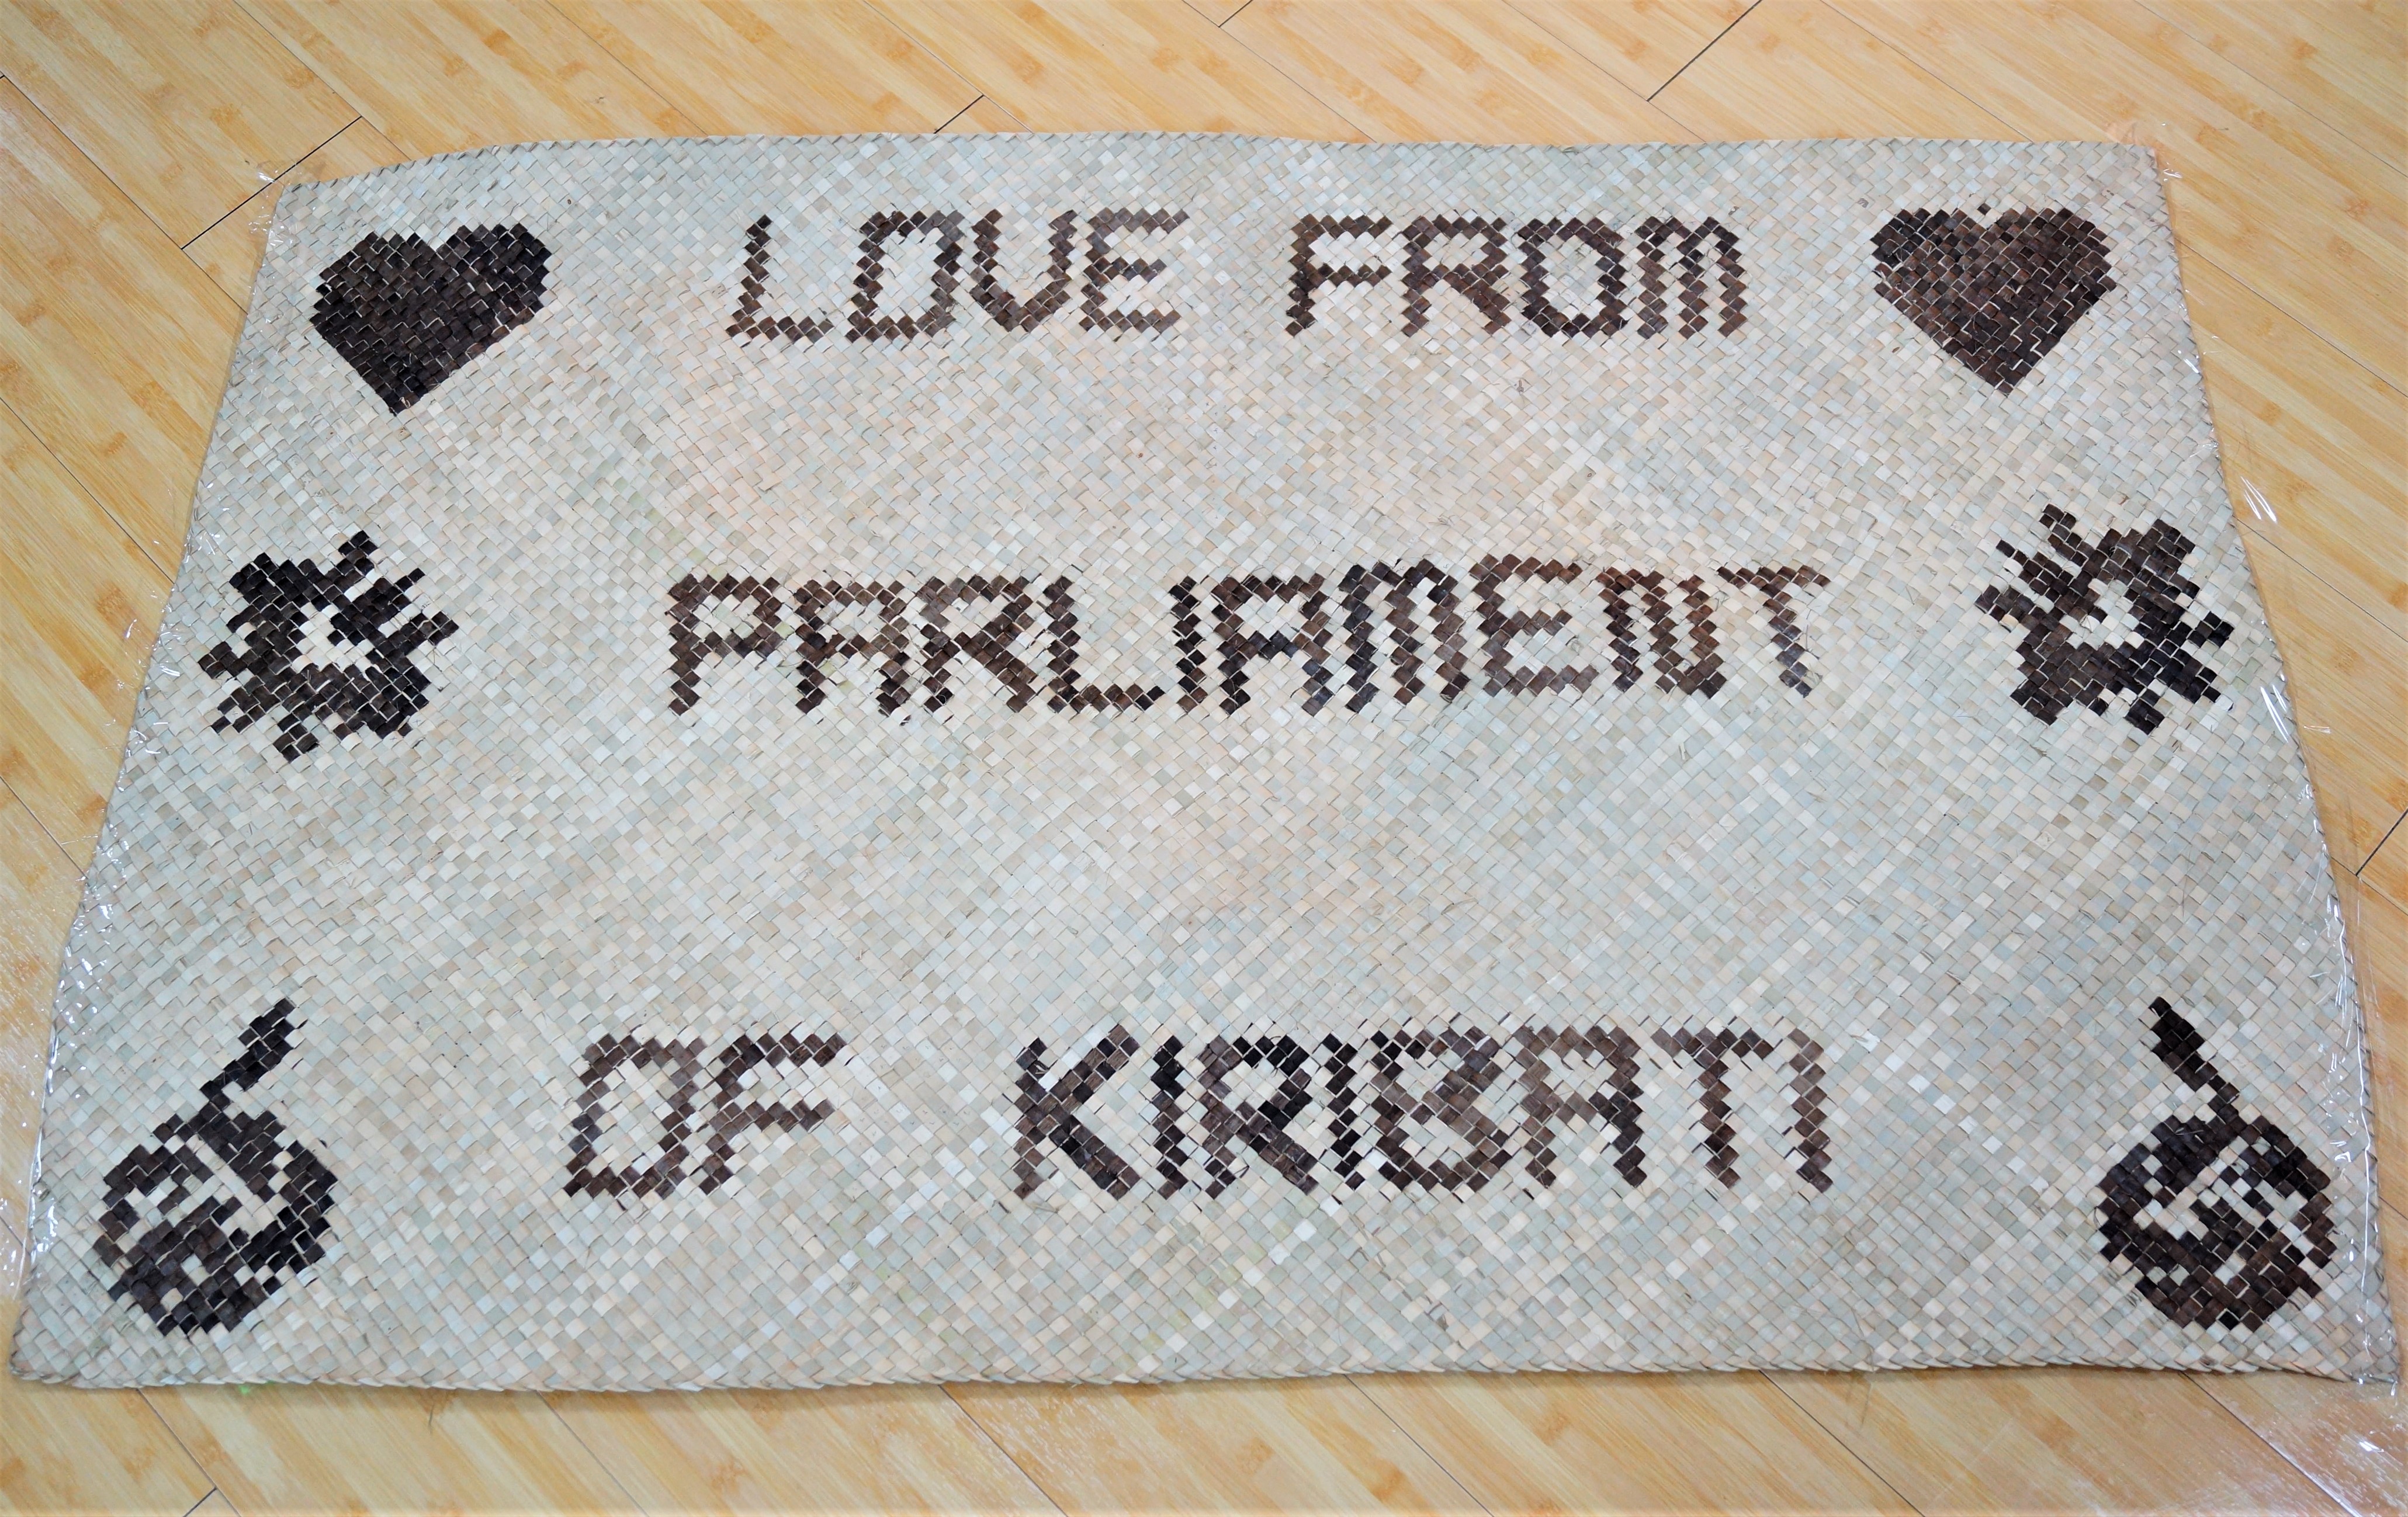 吉里巴斯共和國國會議長萬伊閣下伉儷等一行致贈-傳統手工編織席製品相關照片